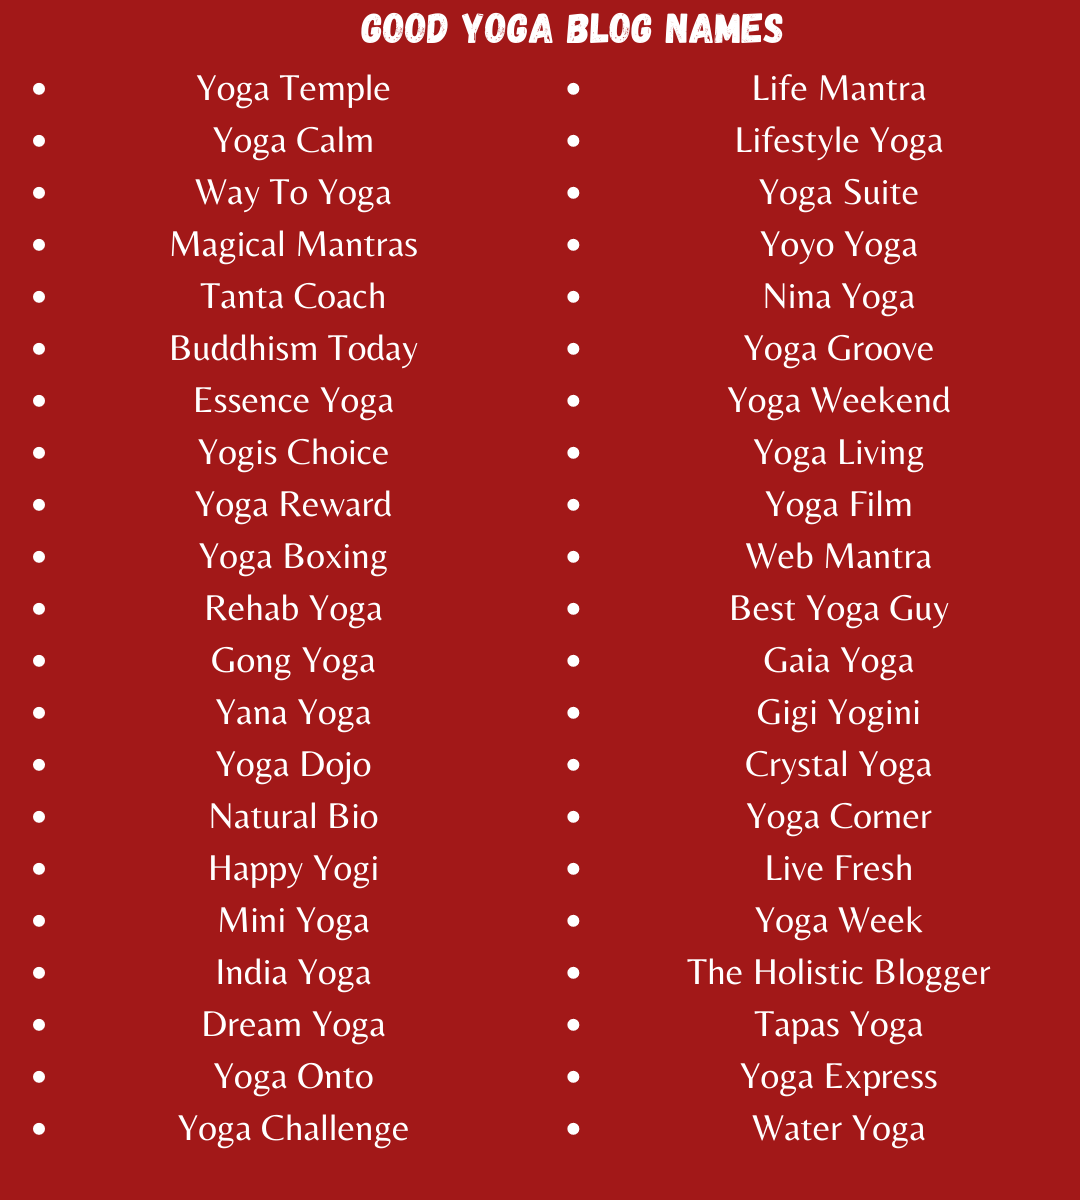 Good Yoga Blog Names